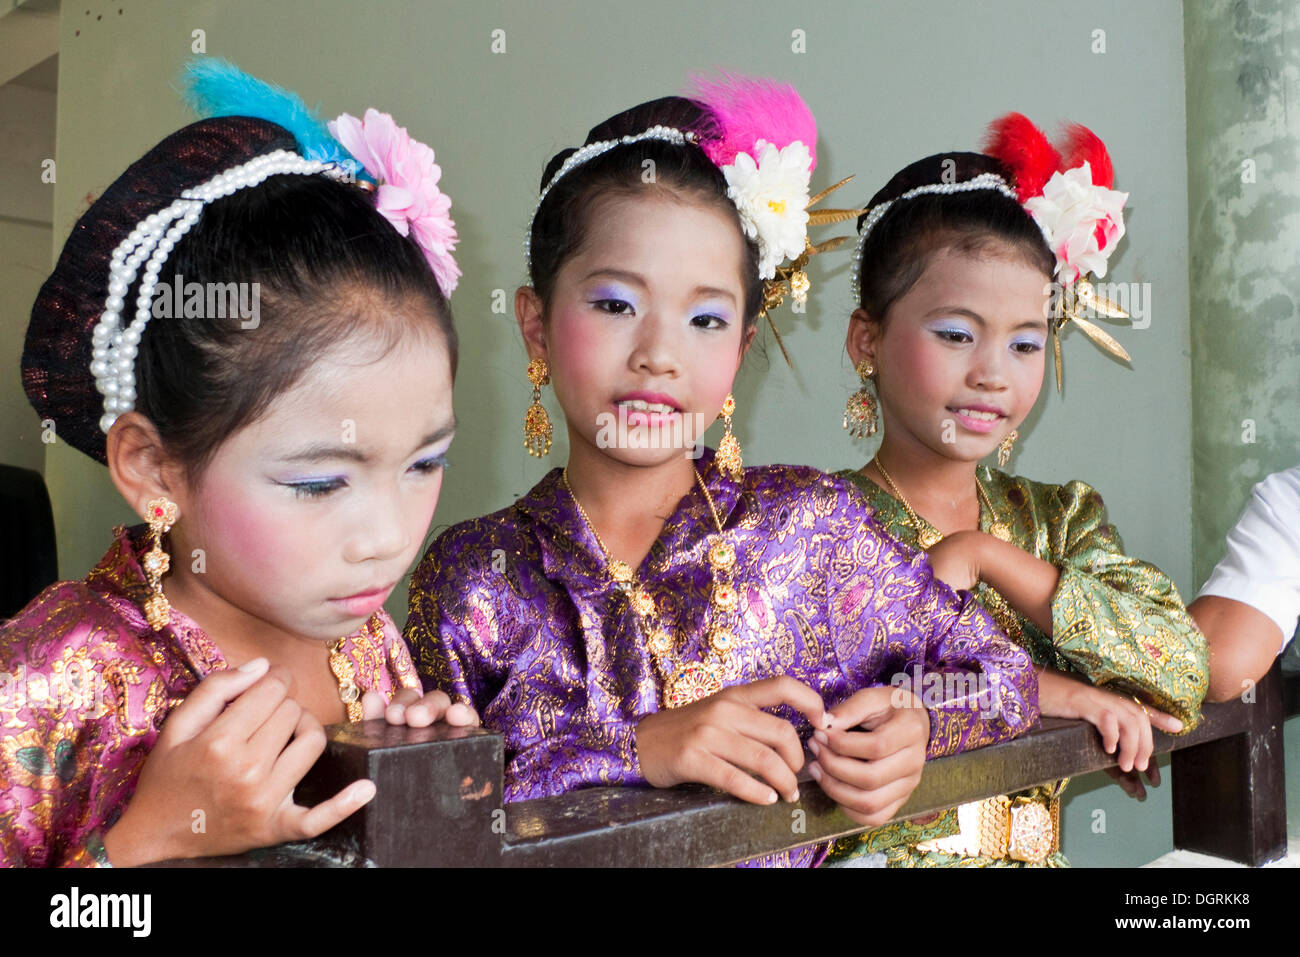 Waisen tragen traditionelle Tanz Kostüm, Beluga School for Life, BSfL, ein Hilfsprojekt für Kinder in Not in Thailand, Stockfoto